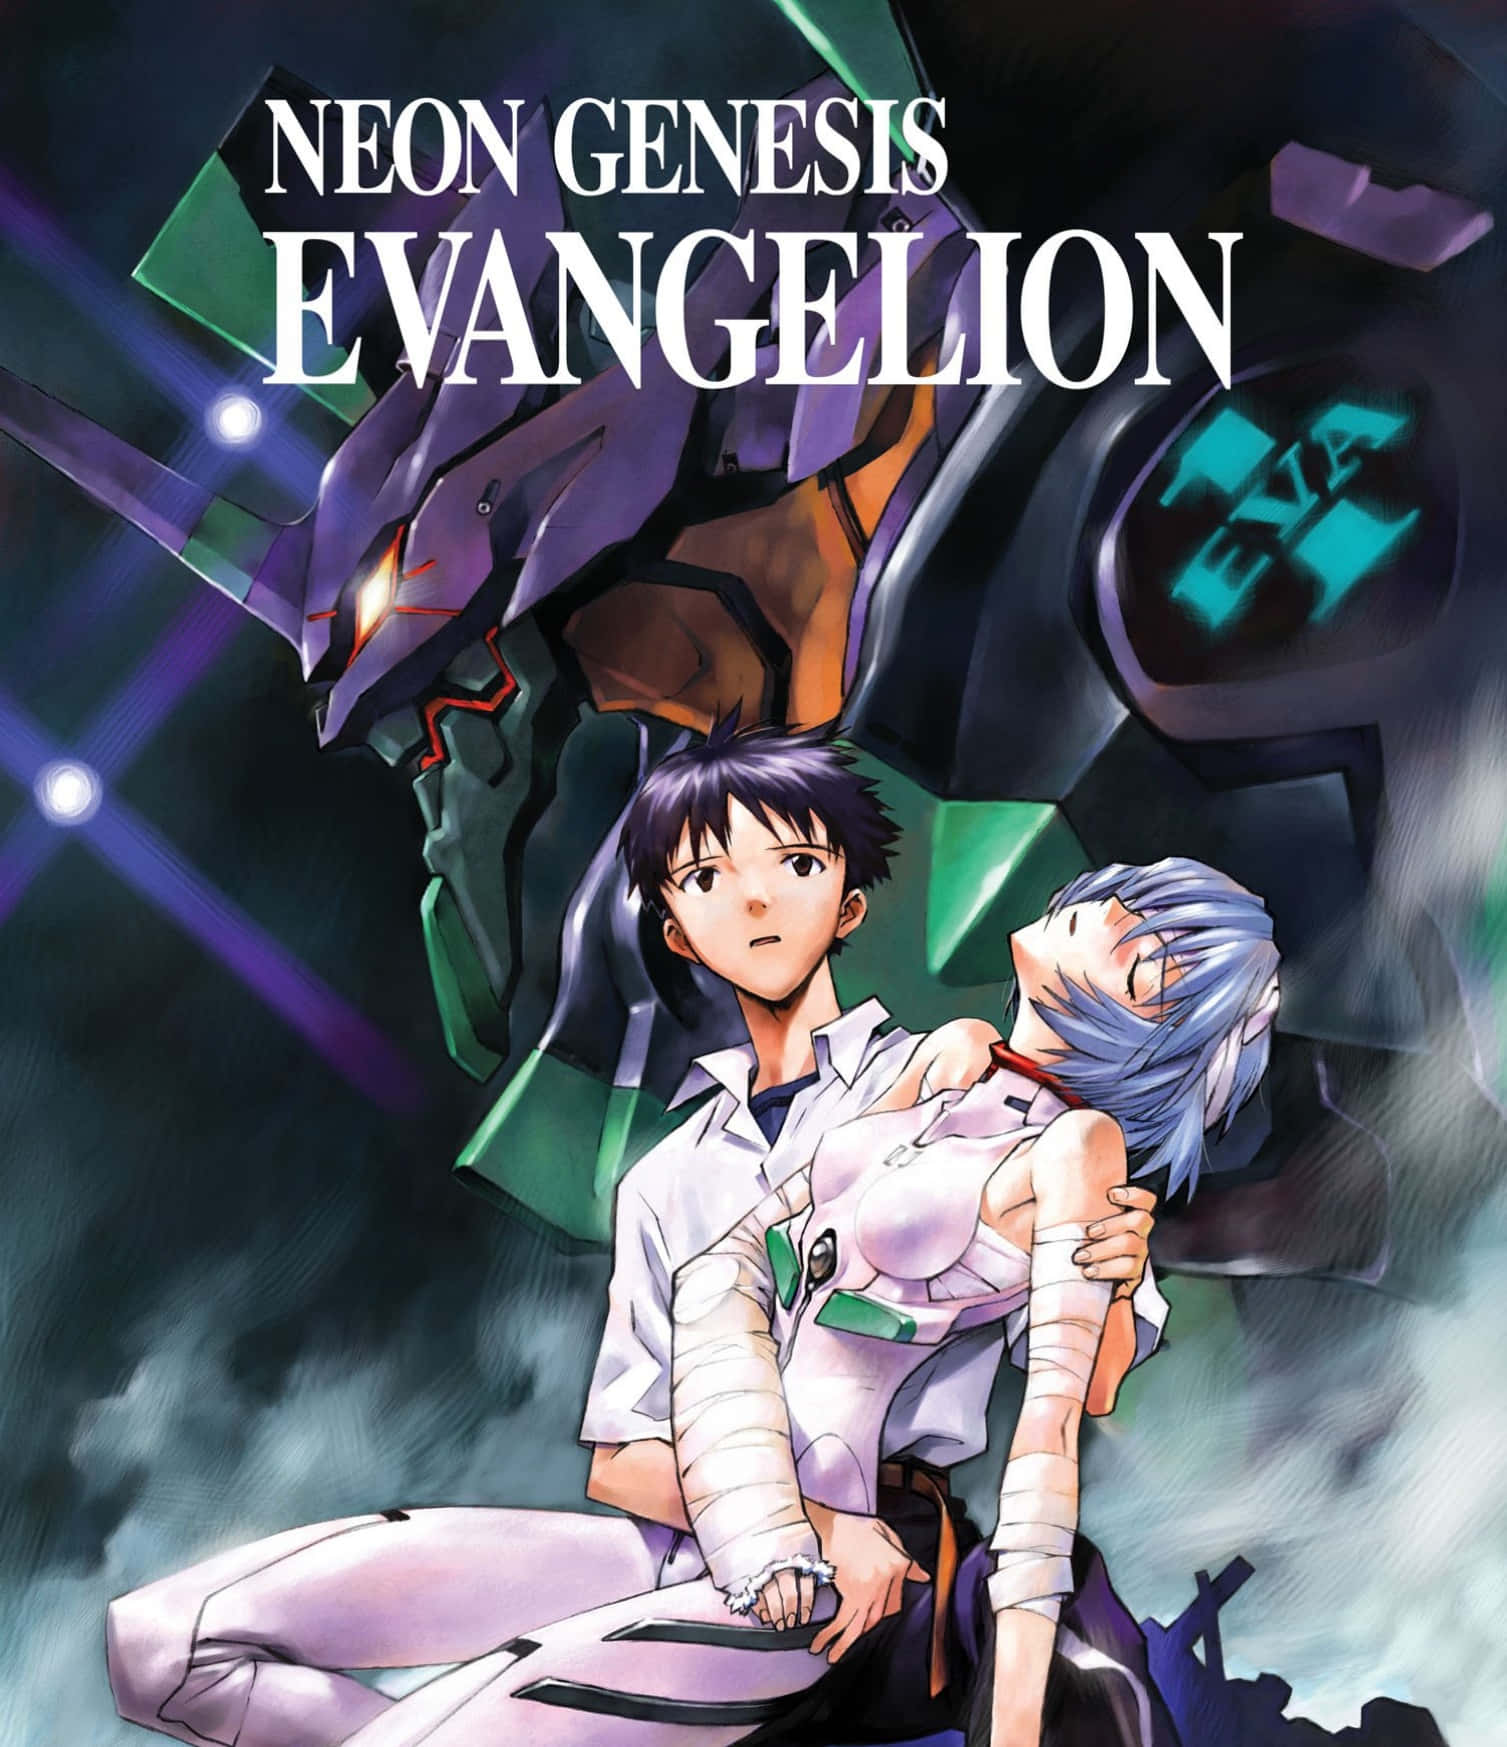 Asukalangley Von Neon Genesis Evangelion